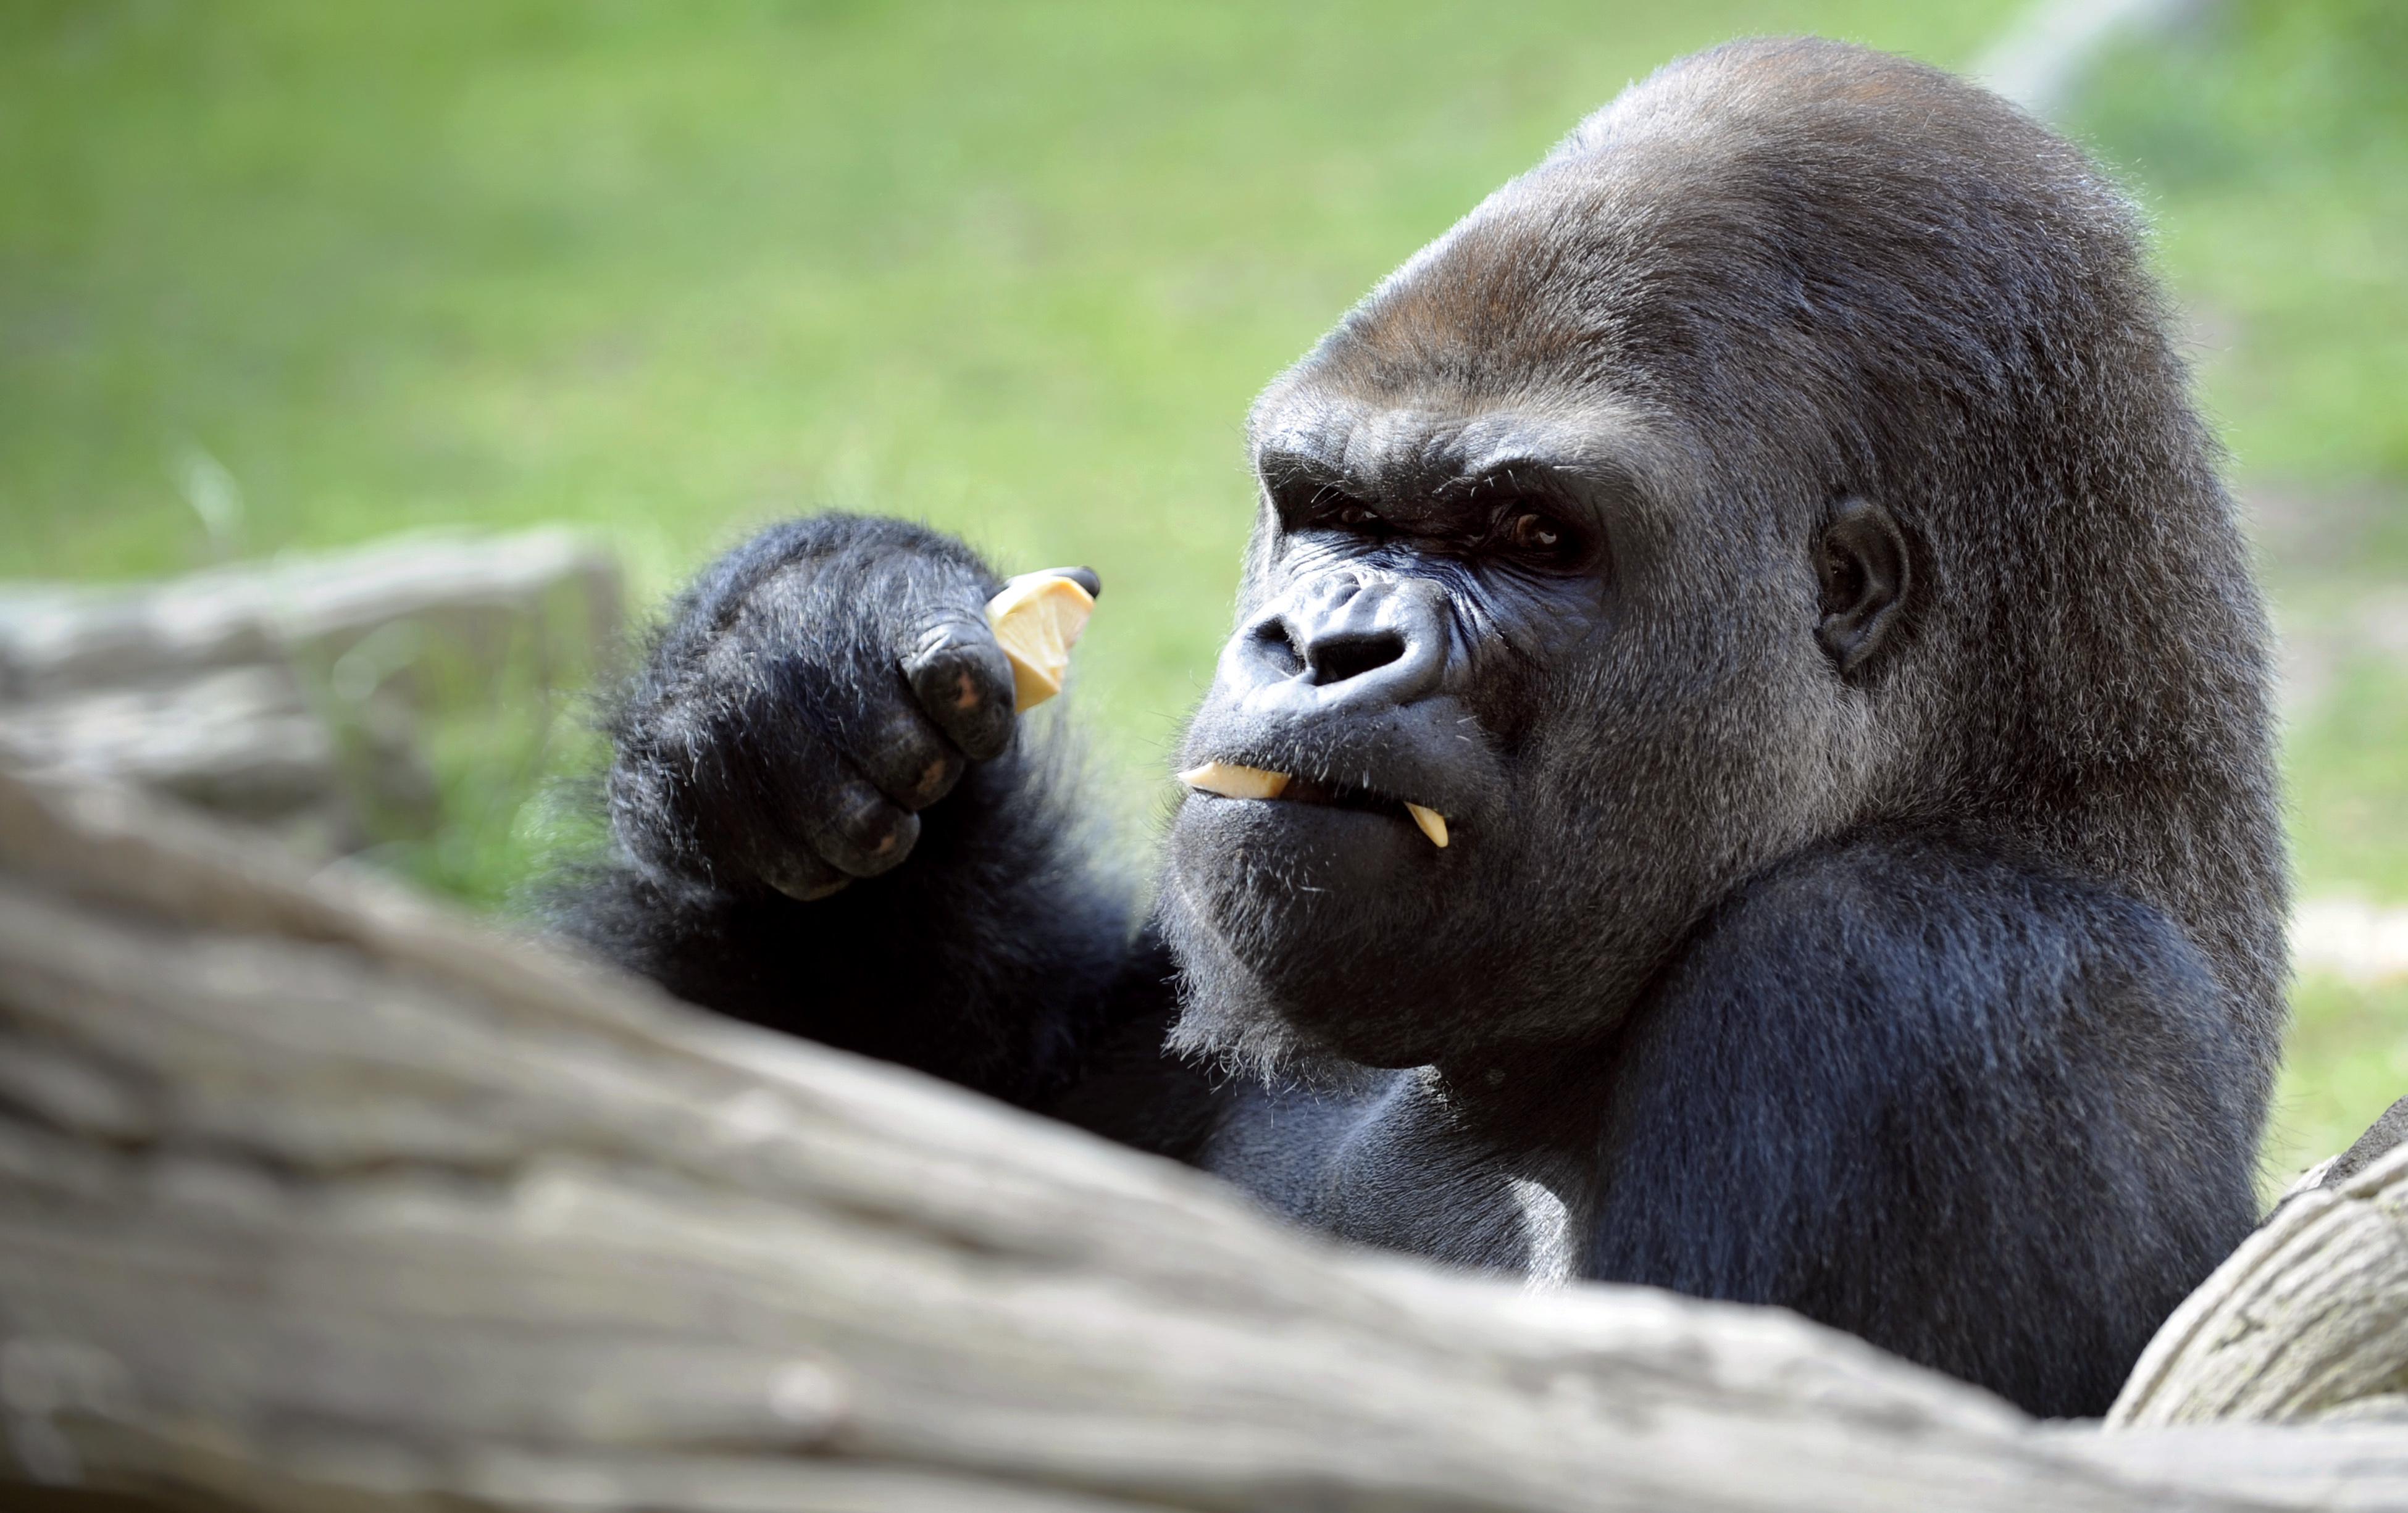 gorilla vs orangutan strength